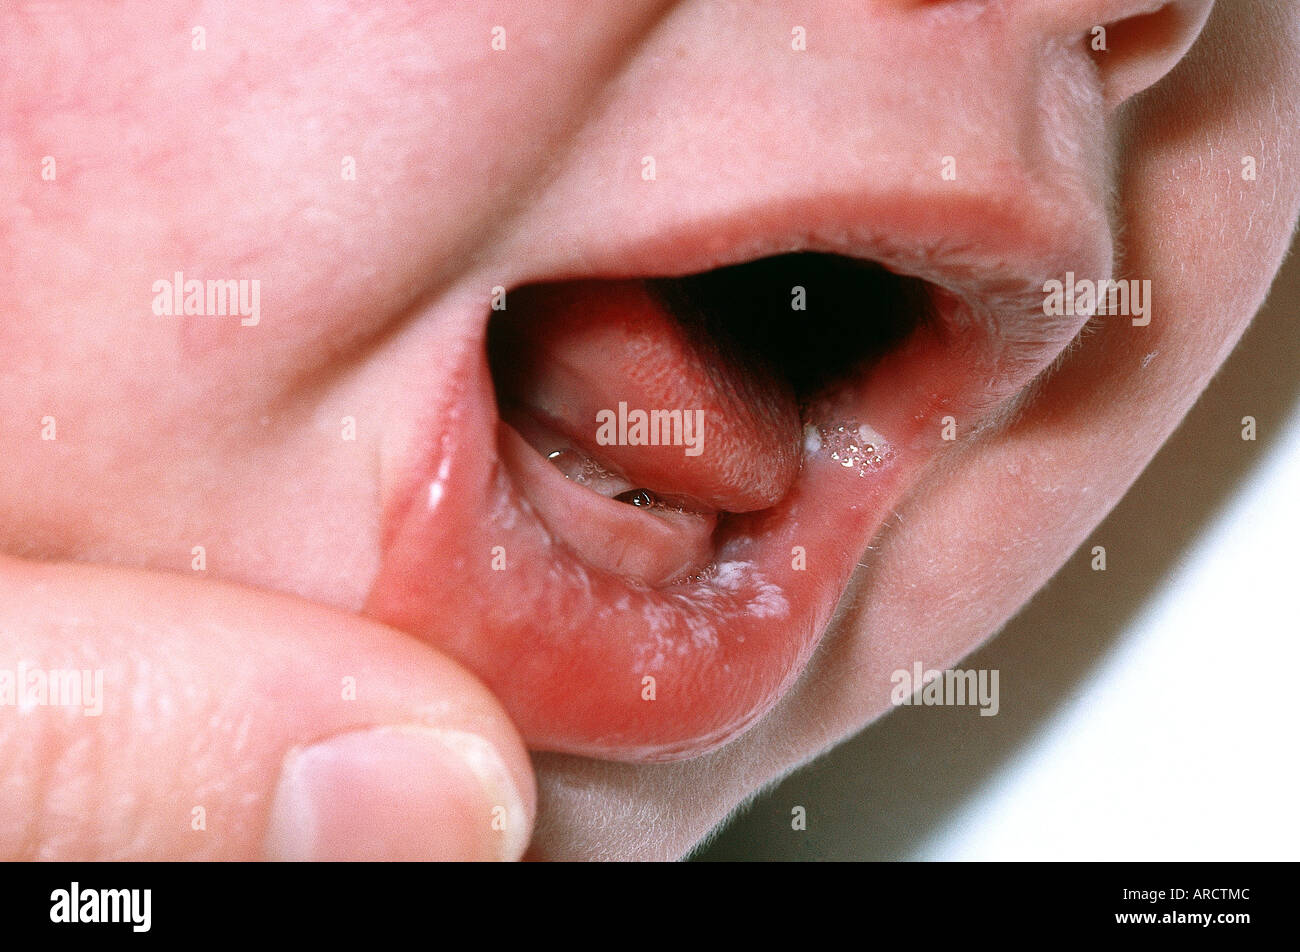 Une Photographie D Un Bebe Atteint De Muguet Une Infection Causee Par Le Germe De La Levure Candida Photo Stock Alamy